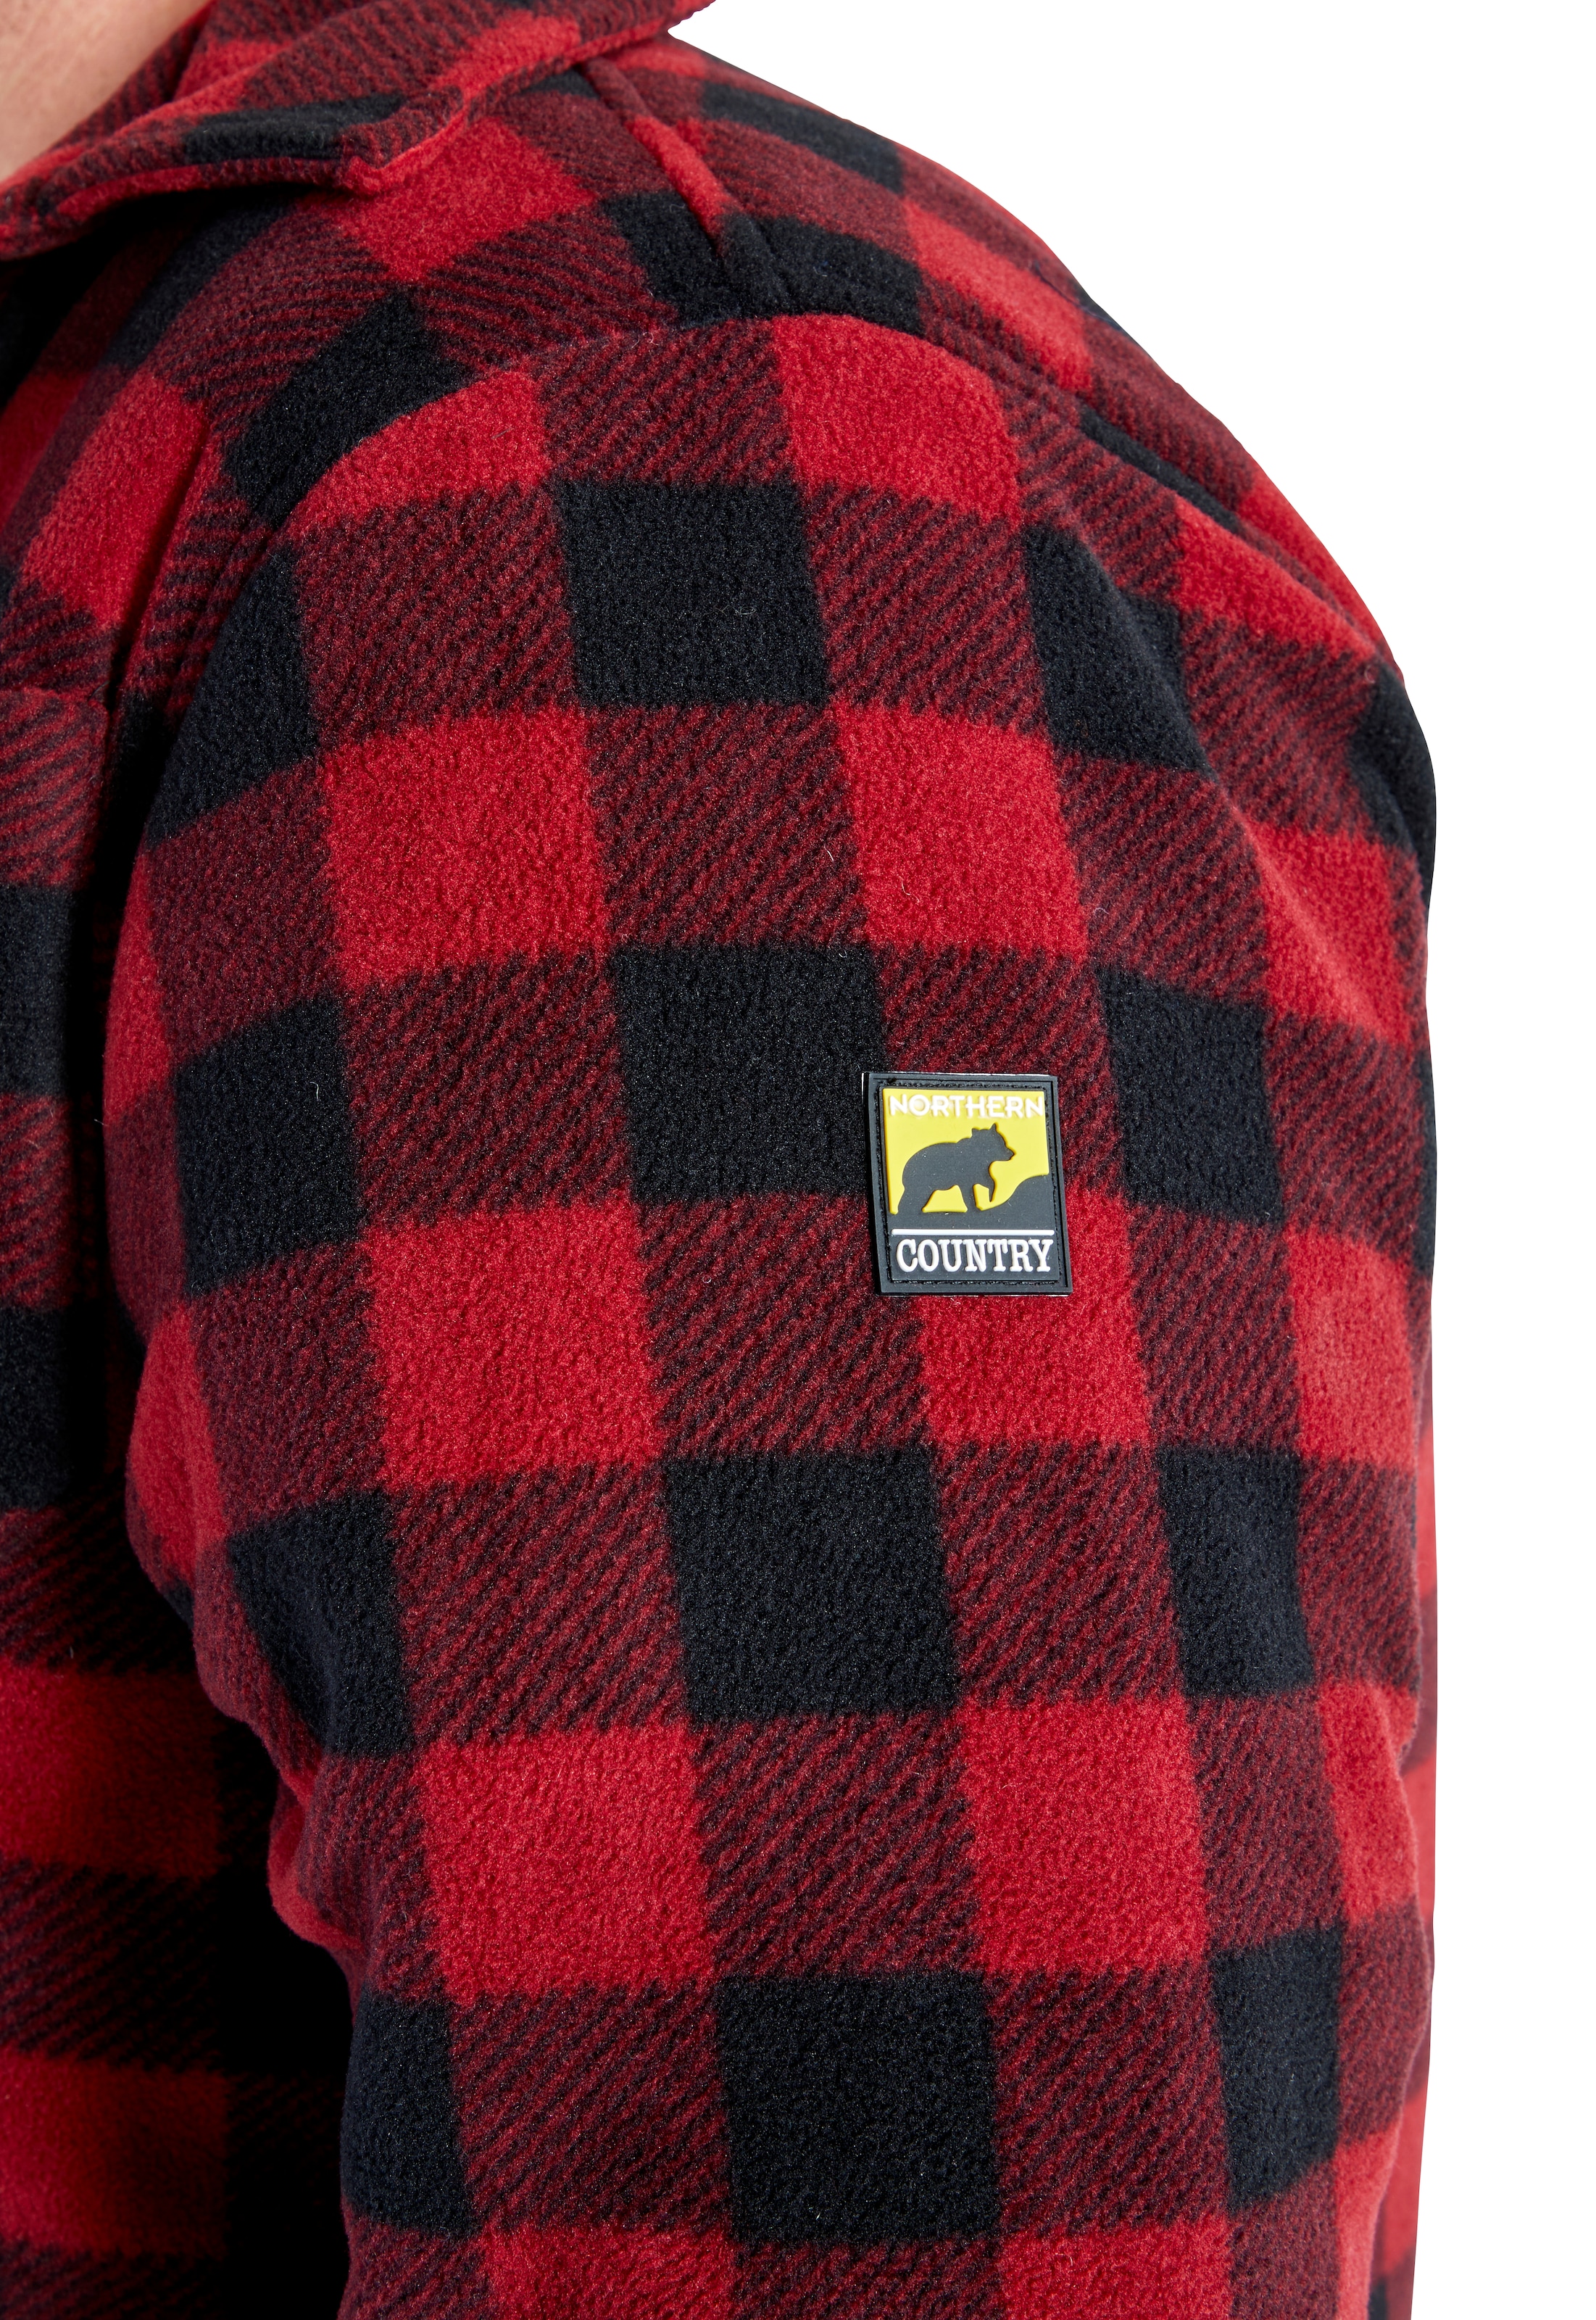 Northern Country Flanellhemd, tragen), mit bei Taschen, (als 5 mit warm Flanellstoff verlängertem ♕ offen zu Hemd oder Jacke Rücken, gefüttert, zugeknöpft